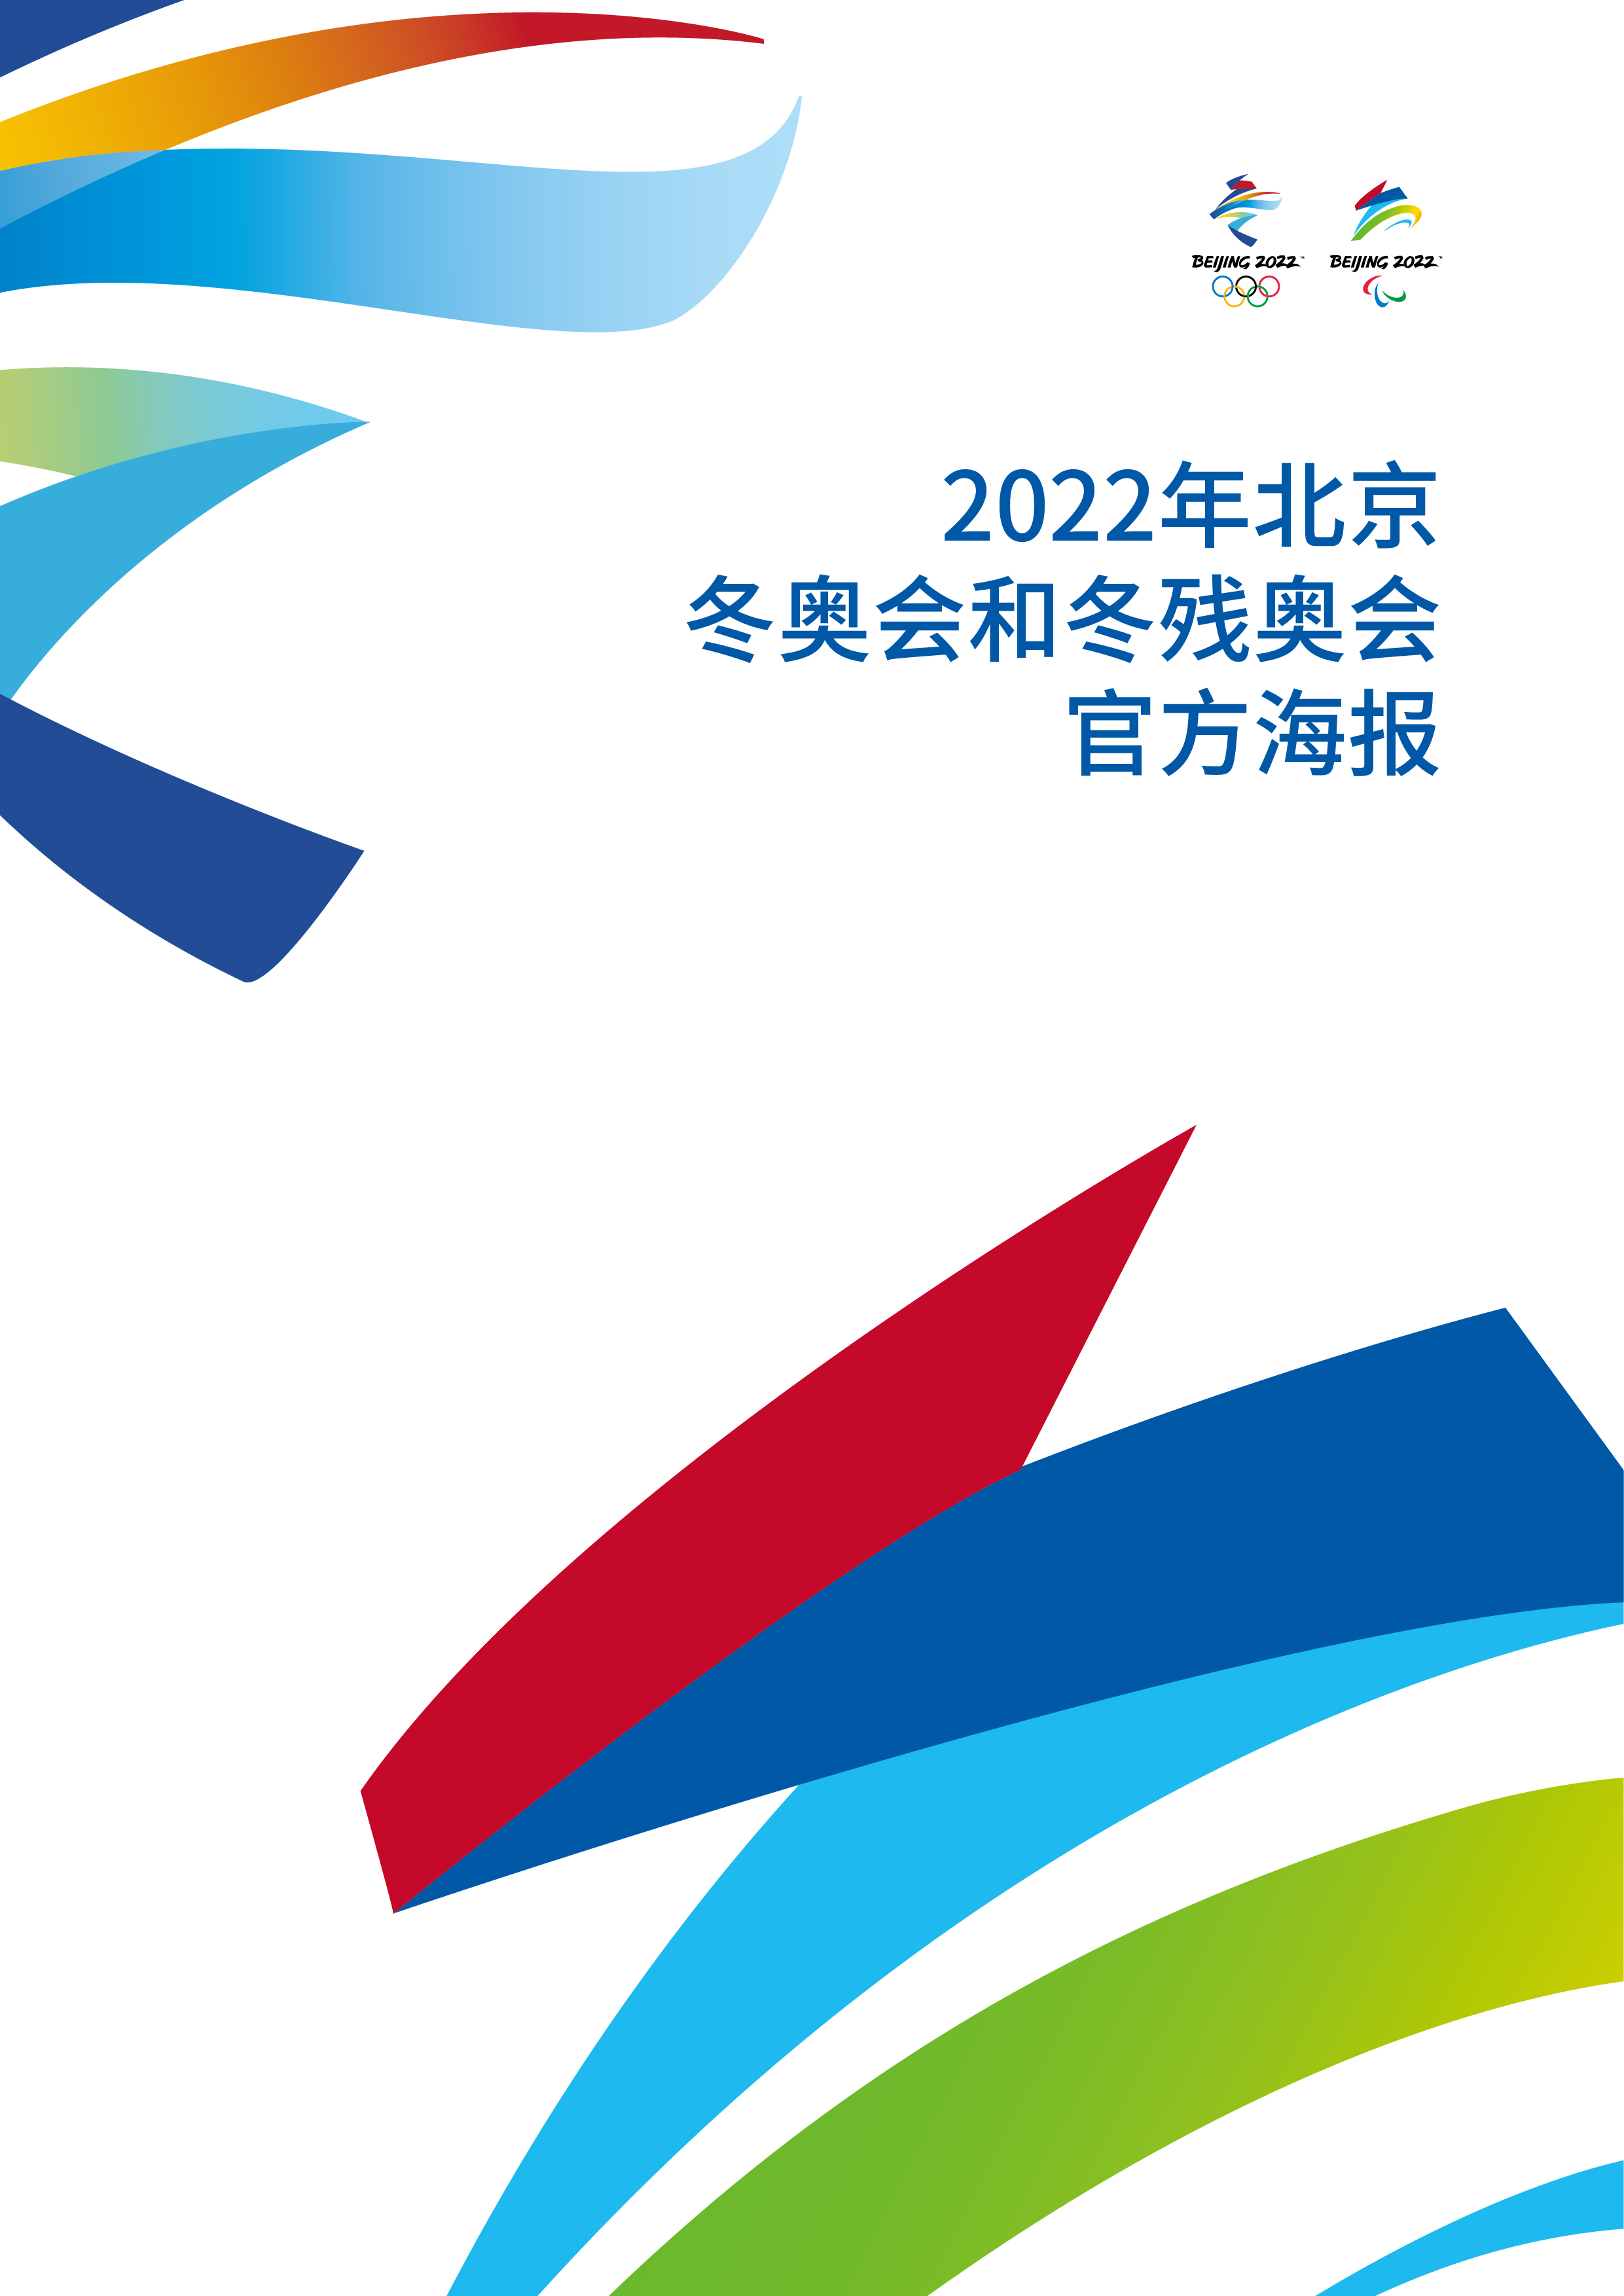 北京2022年冬奥会和冬残奥会海报设计